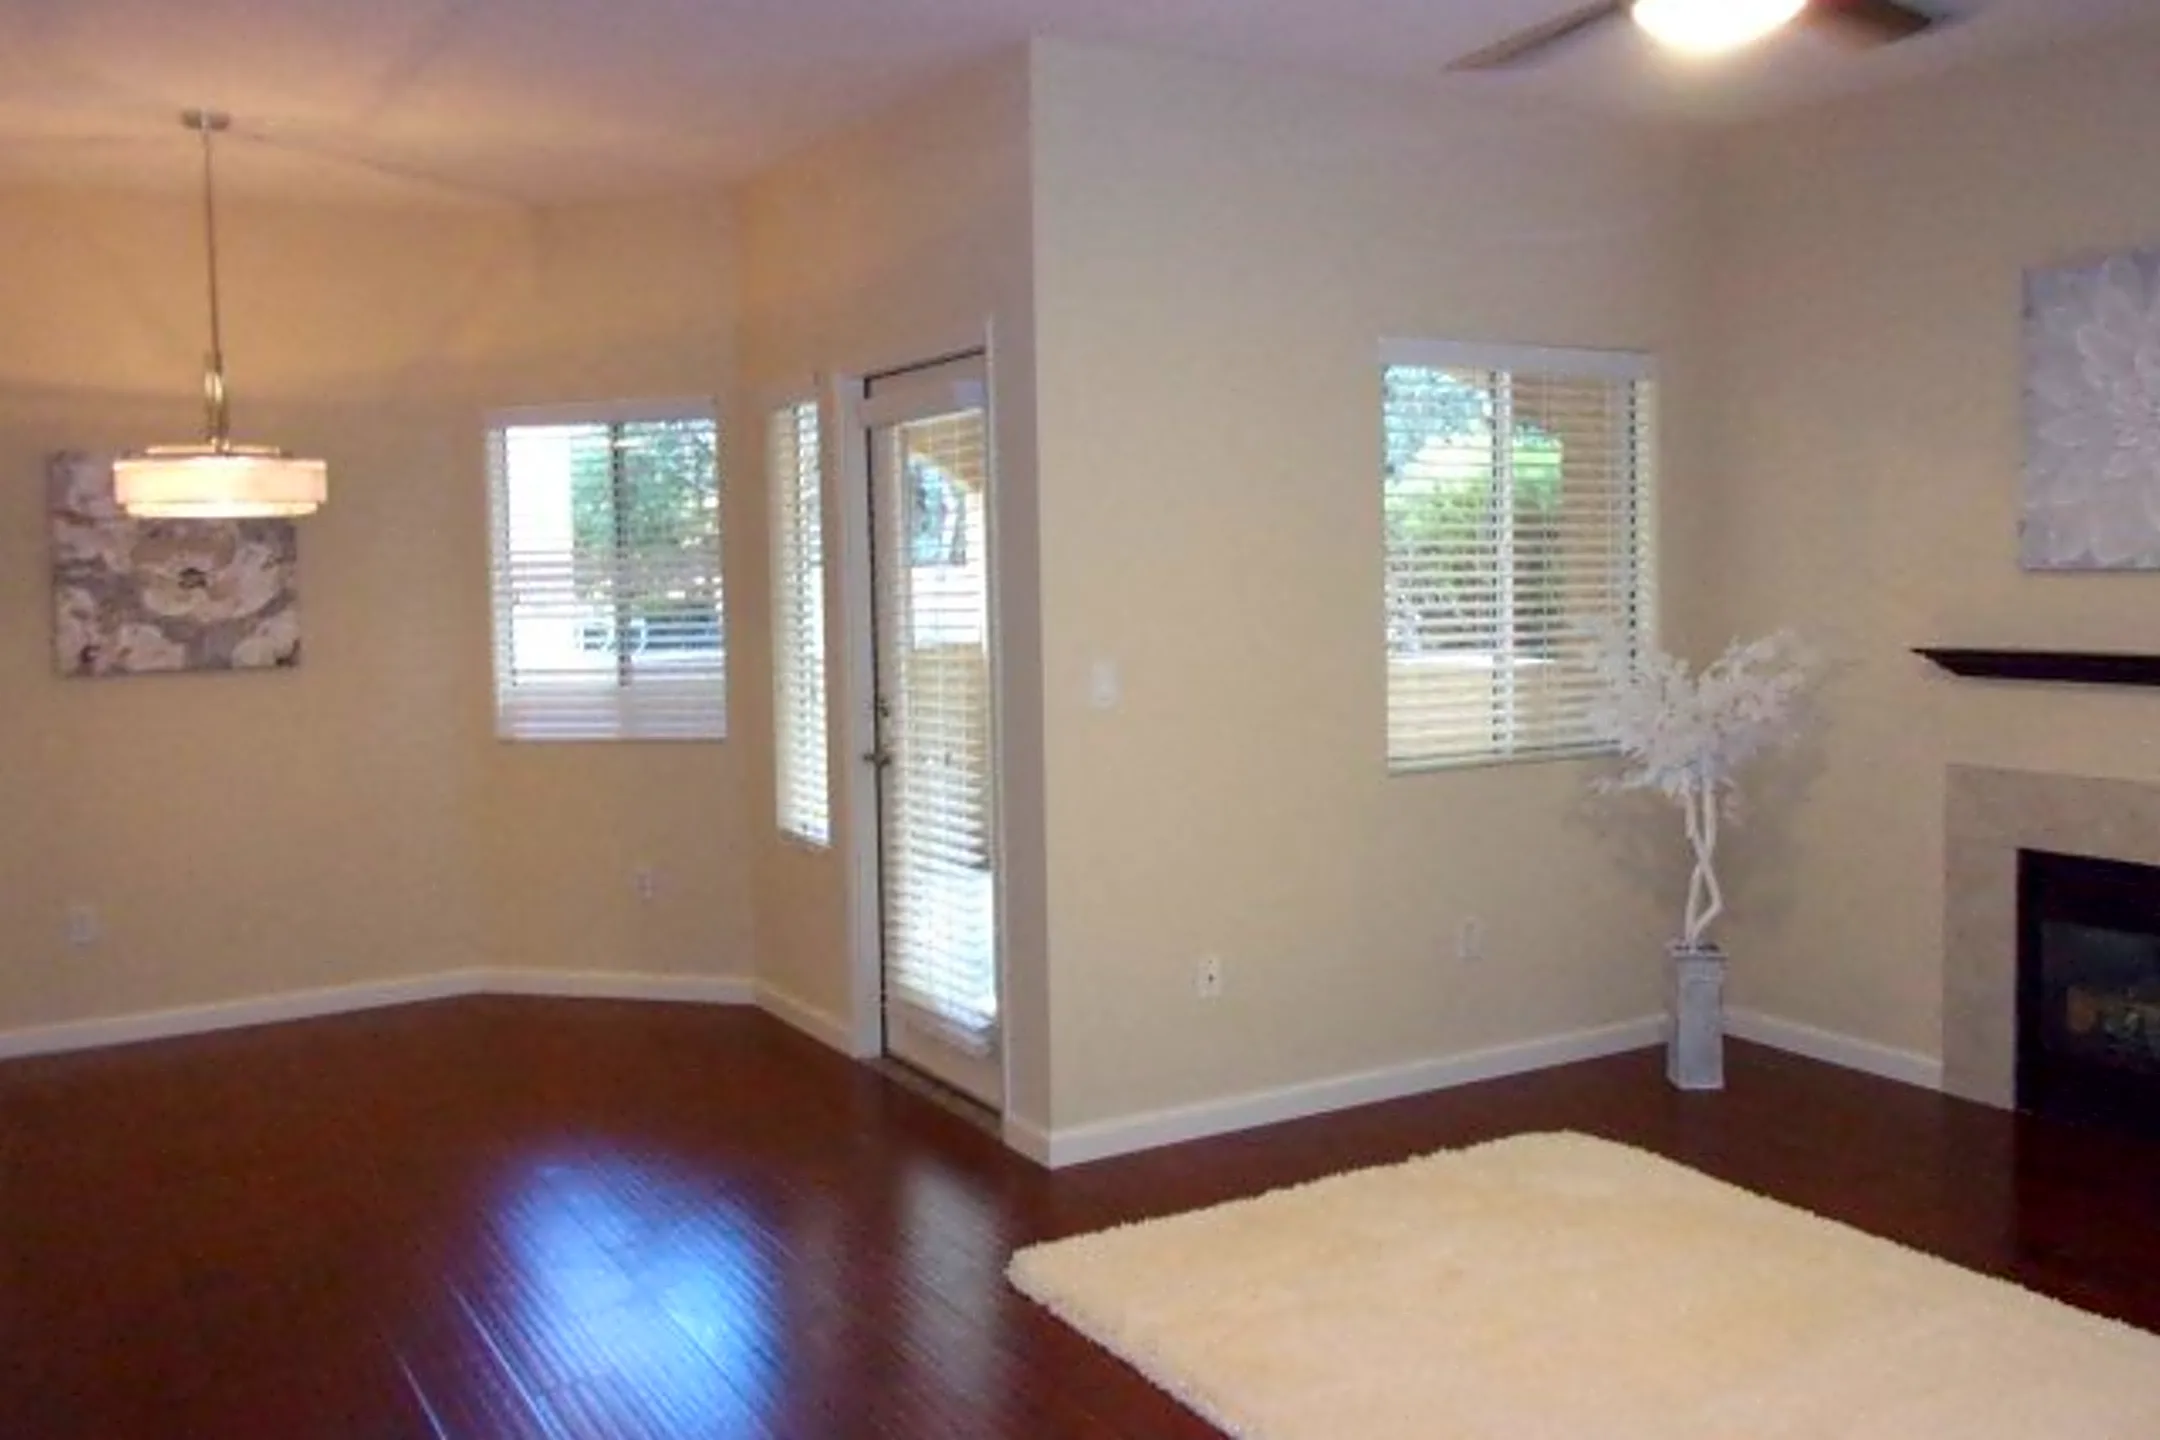 Living Room - Vineyard Gate - Roseville, CA